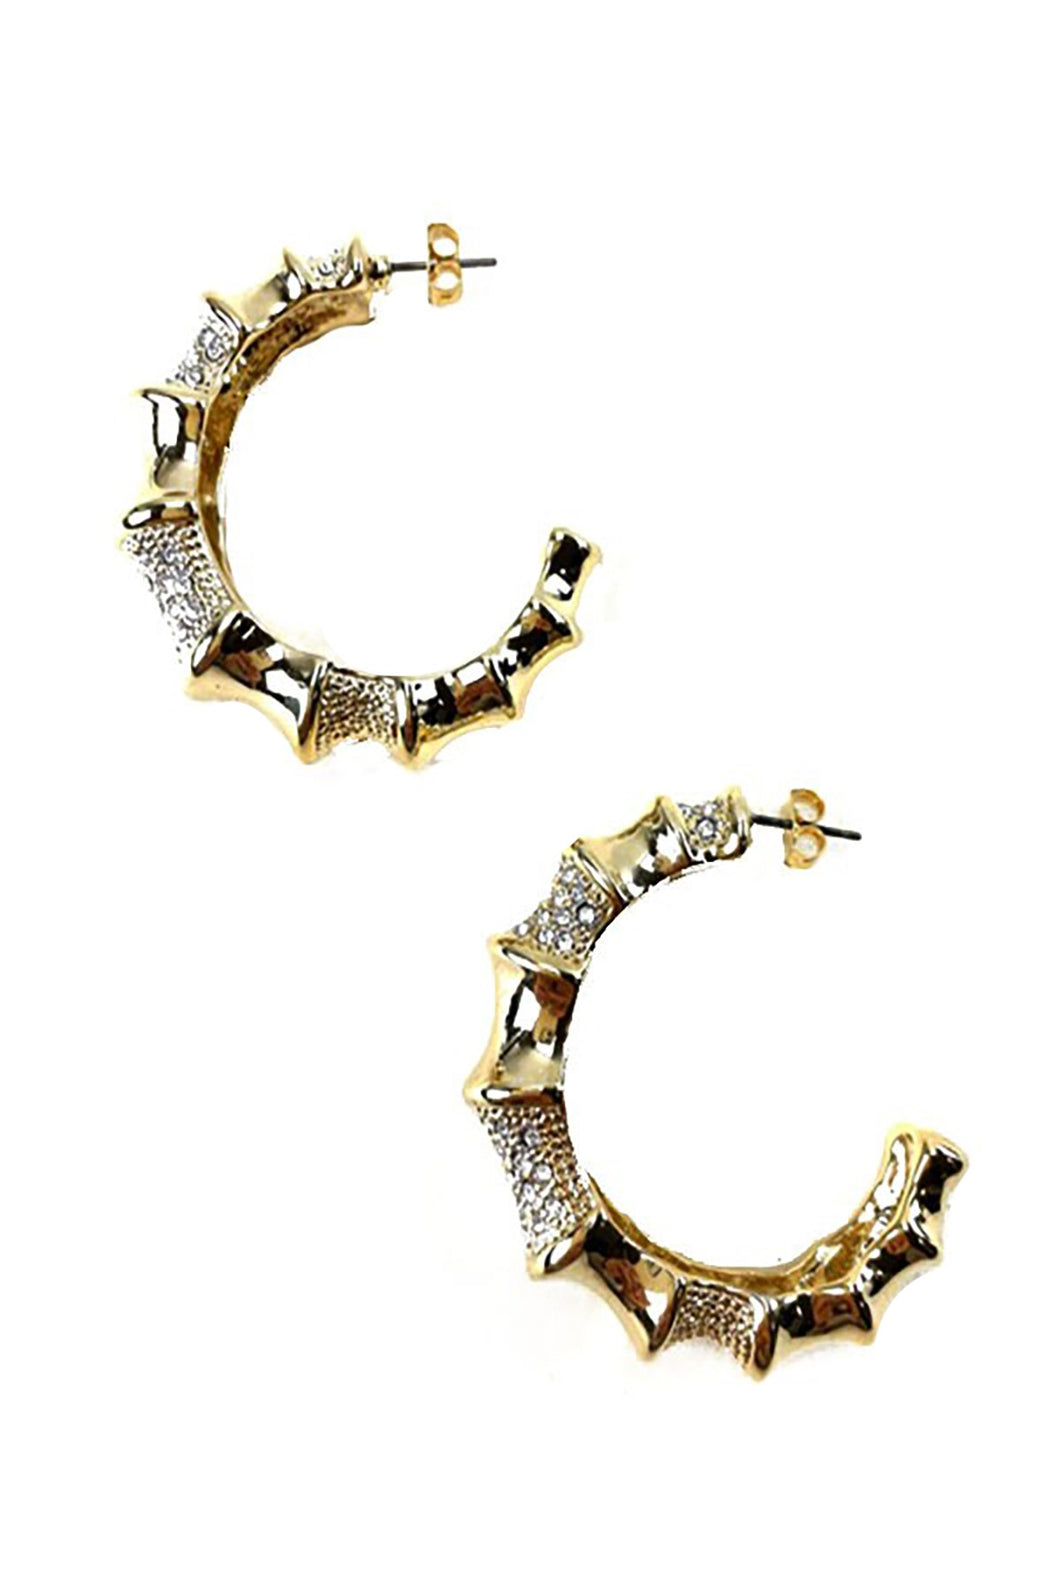 Rhinestone Studded metal hoop earrings